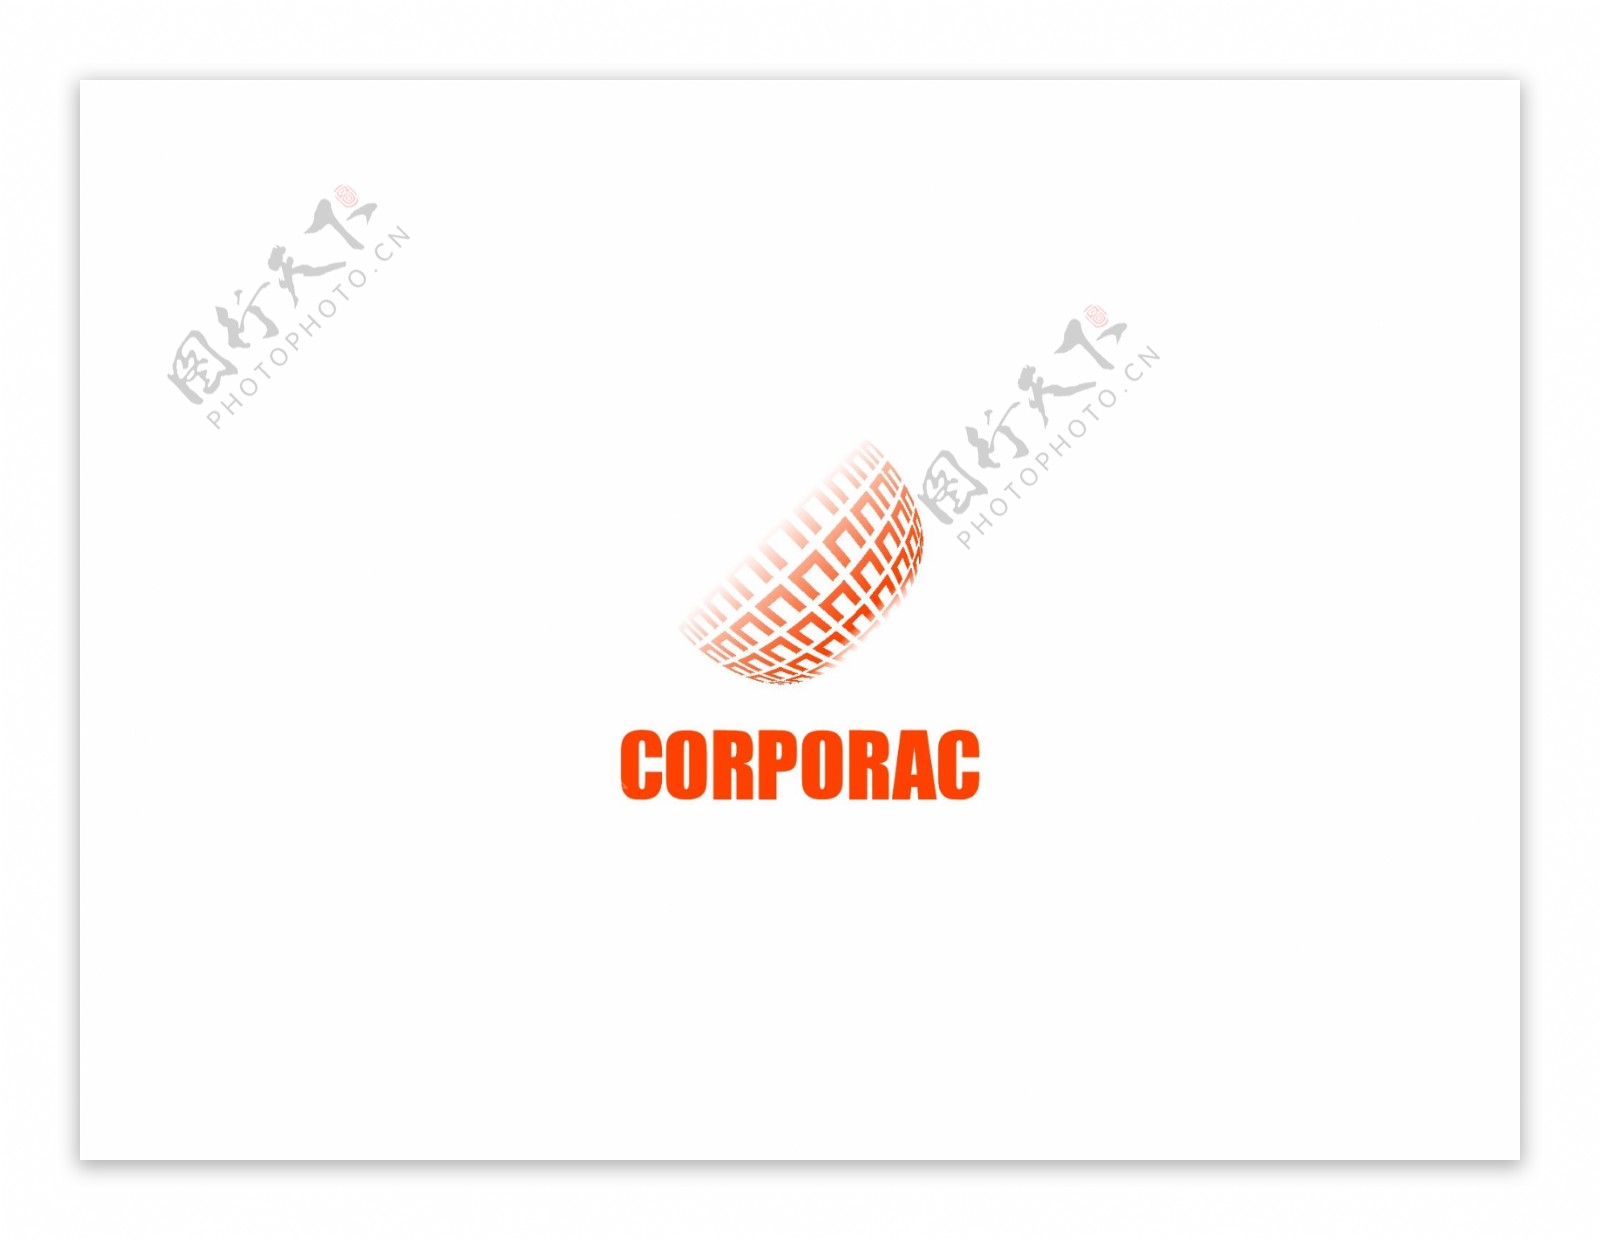 Corporaclogo设计欣赏Corporac医疗机构标志下载标志设计欣赏